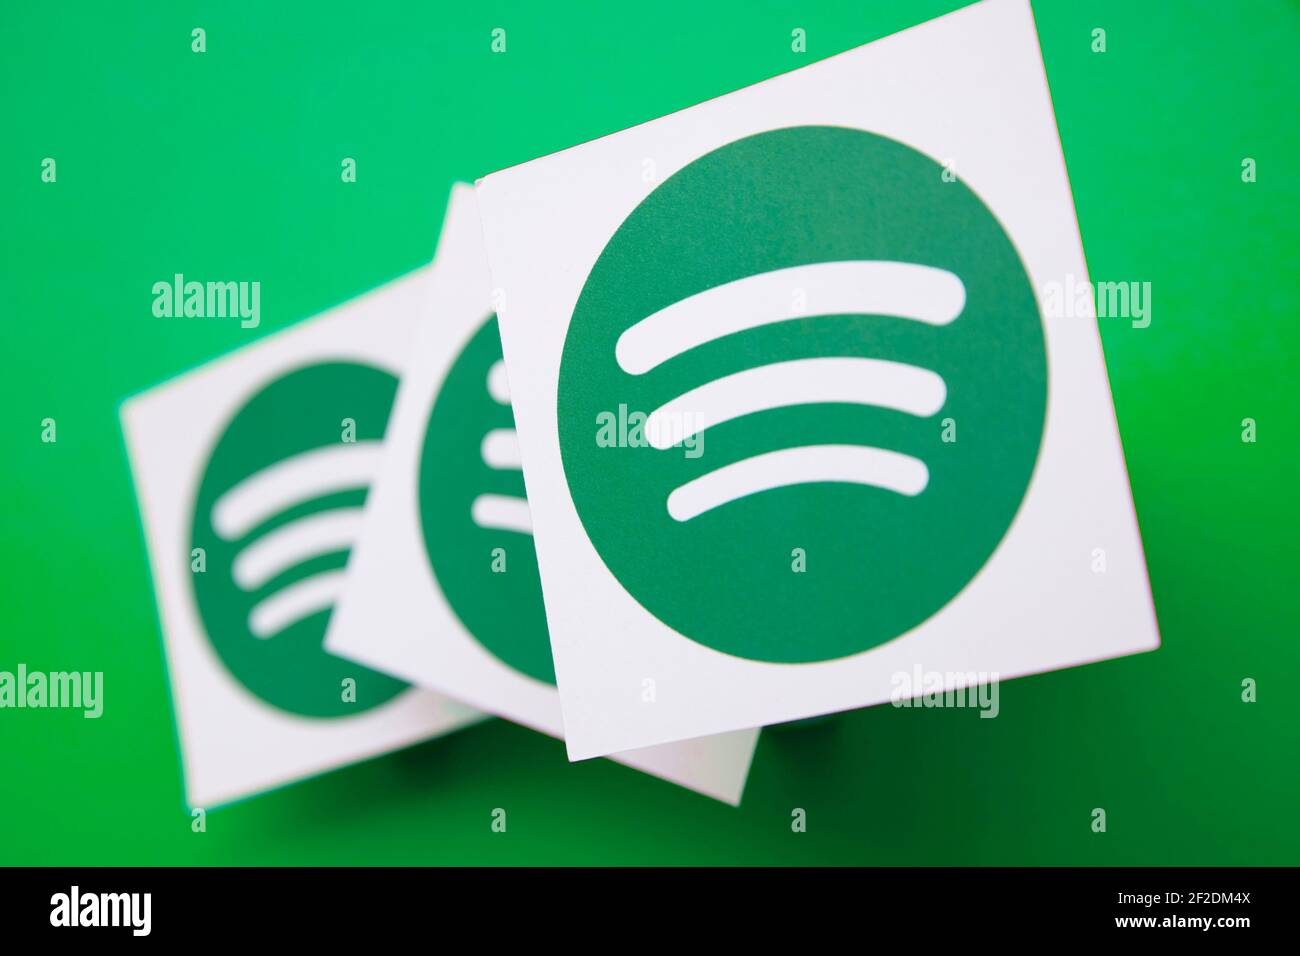 LONDRES, Reino Unido - Marzo de 2021: Spotify música y audio streaming logotipo del servicio Foto de stock